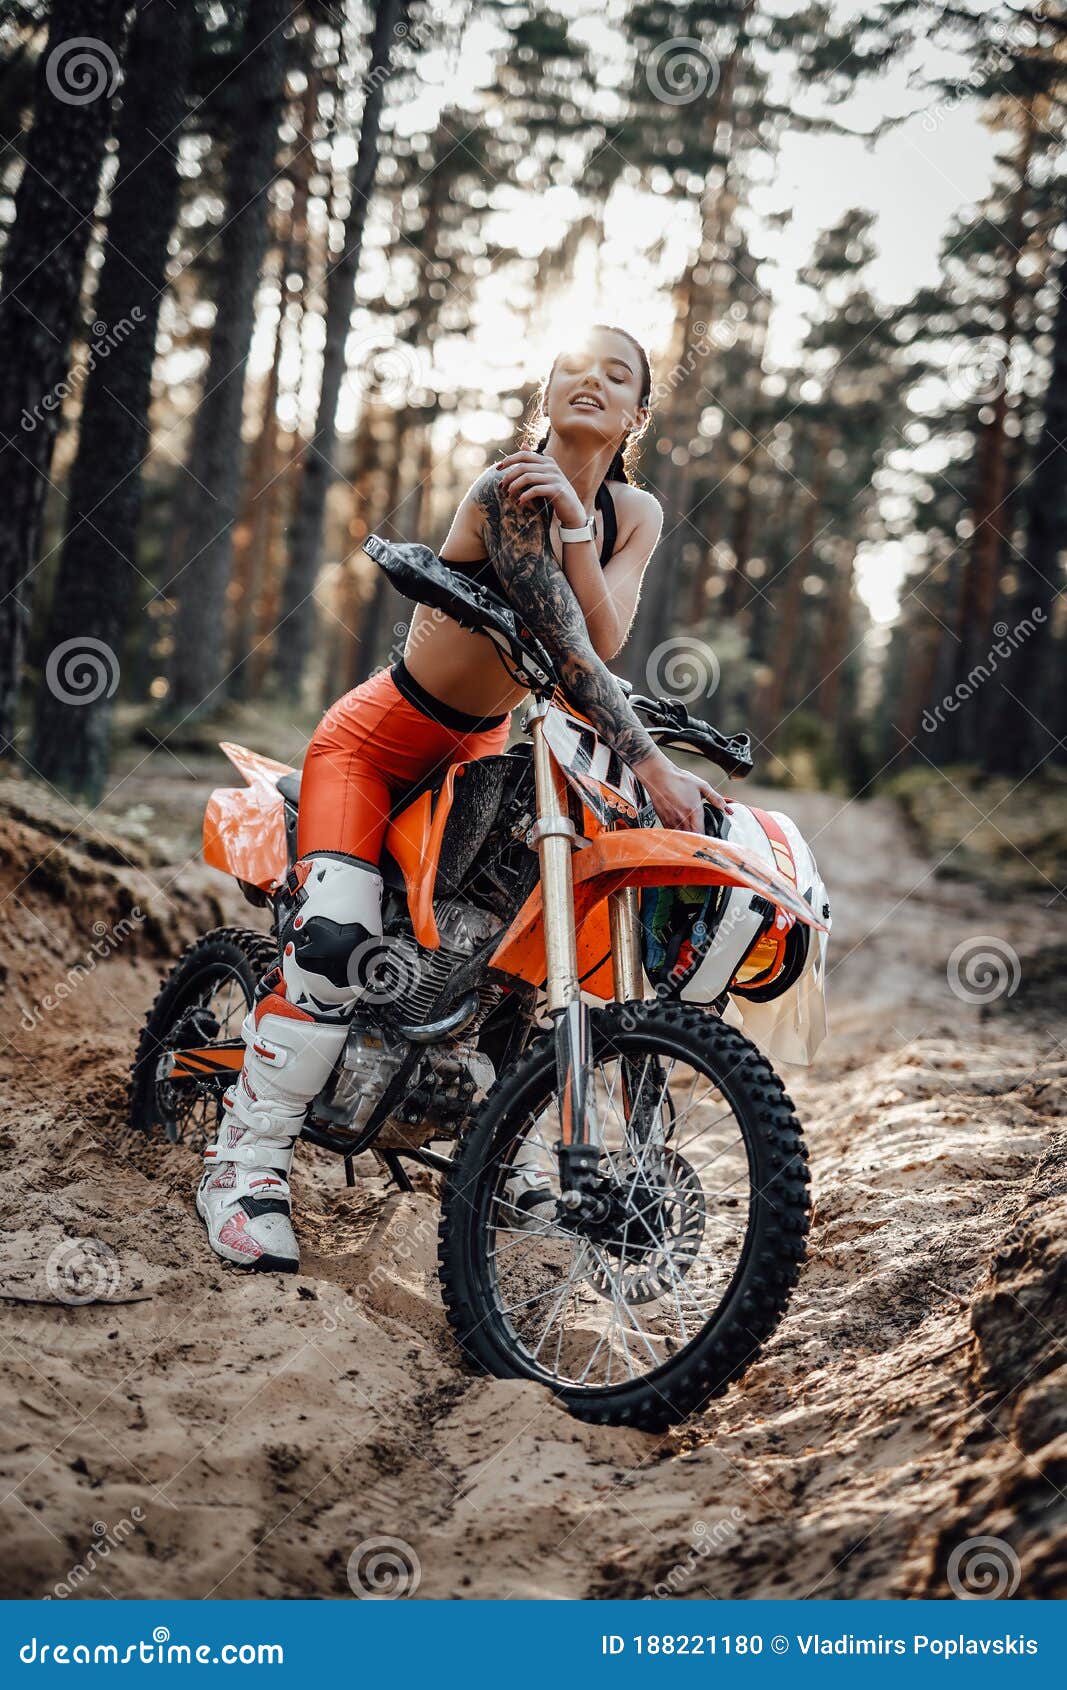 Naked girl motorbike